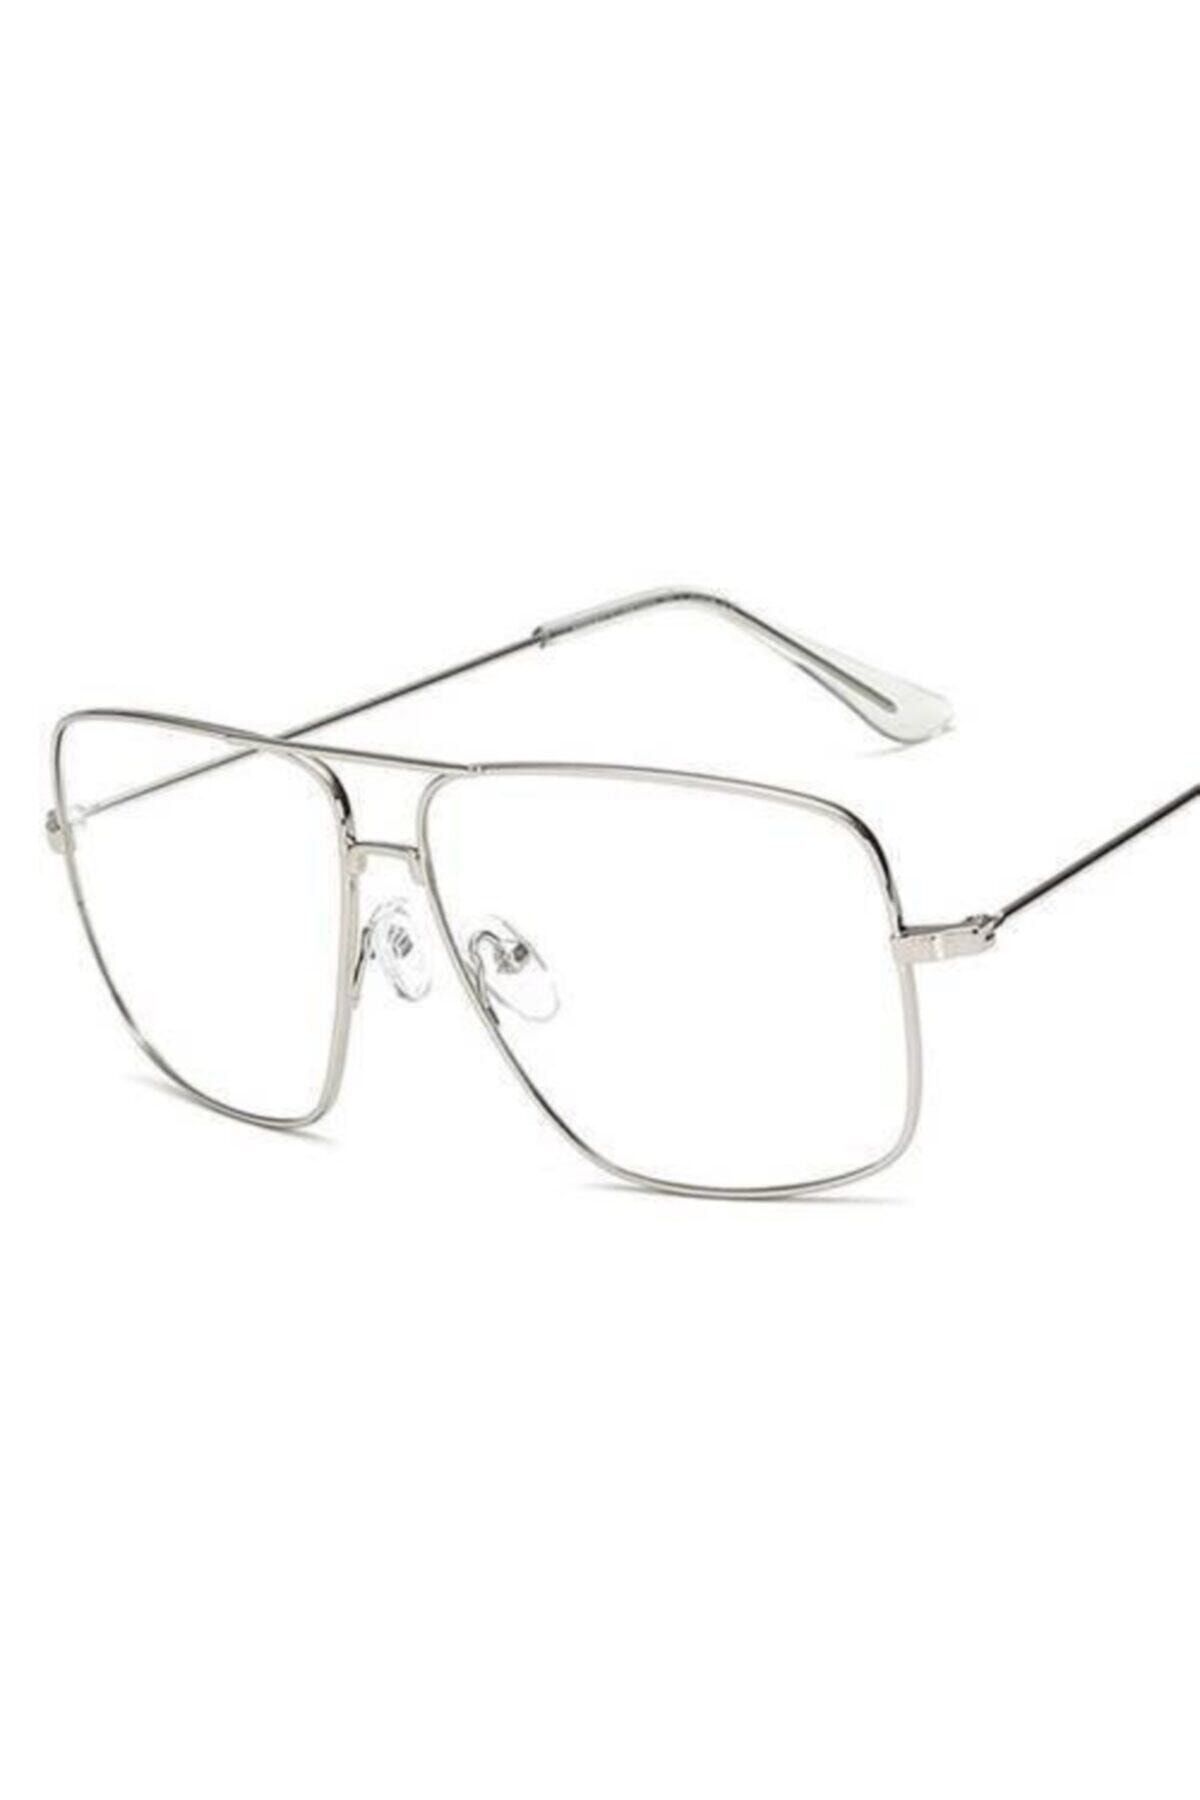 büyükmarket Unisex Gri Yeni Tasarım Reynmen Gözlüğü Damla Pilot Çerçeve Klasik Tarz Gözlük